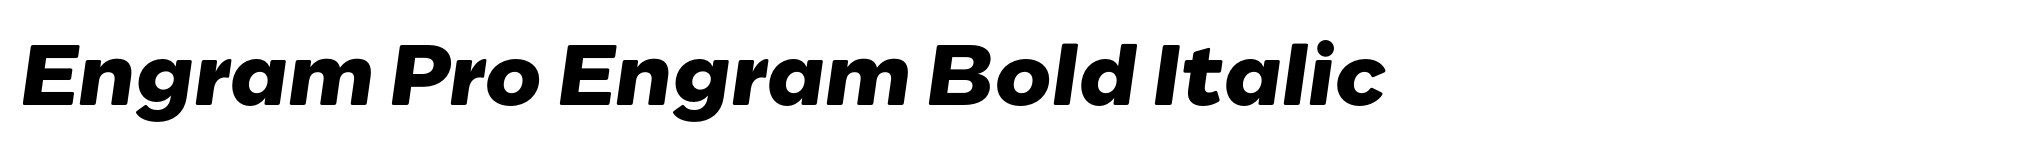 Engram Pro Engram Bold Italic image